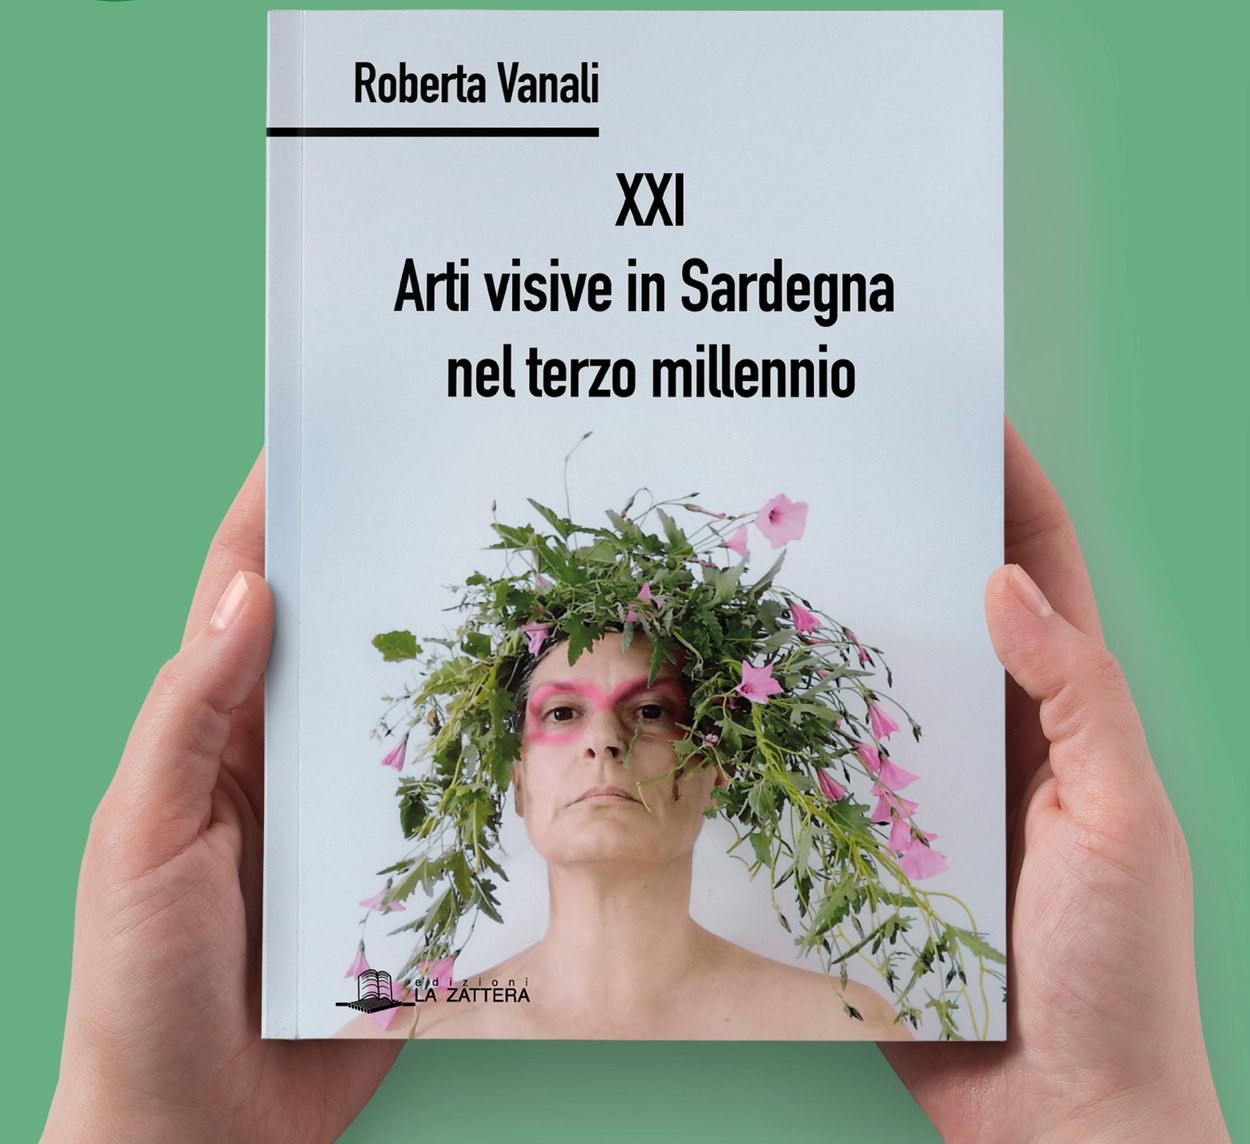 Roberta Vanali, XXI Arti visive in Sardegna nel terzo millennio